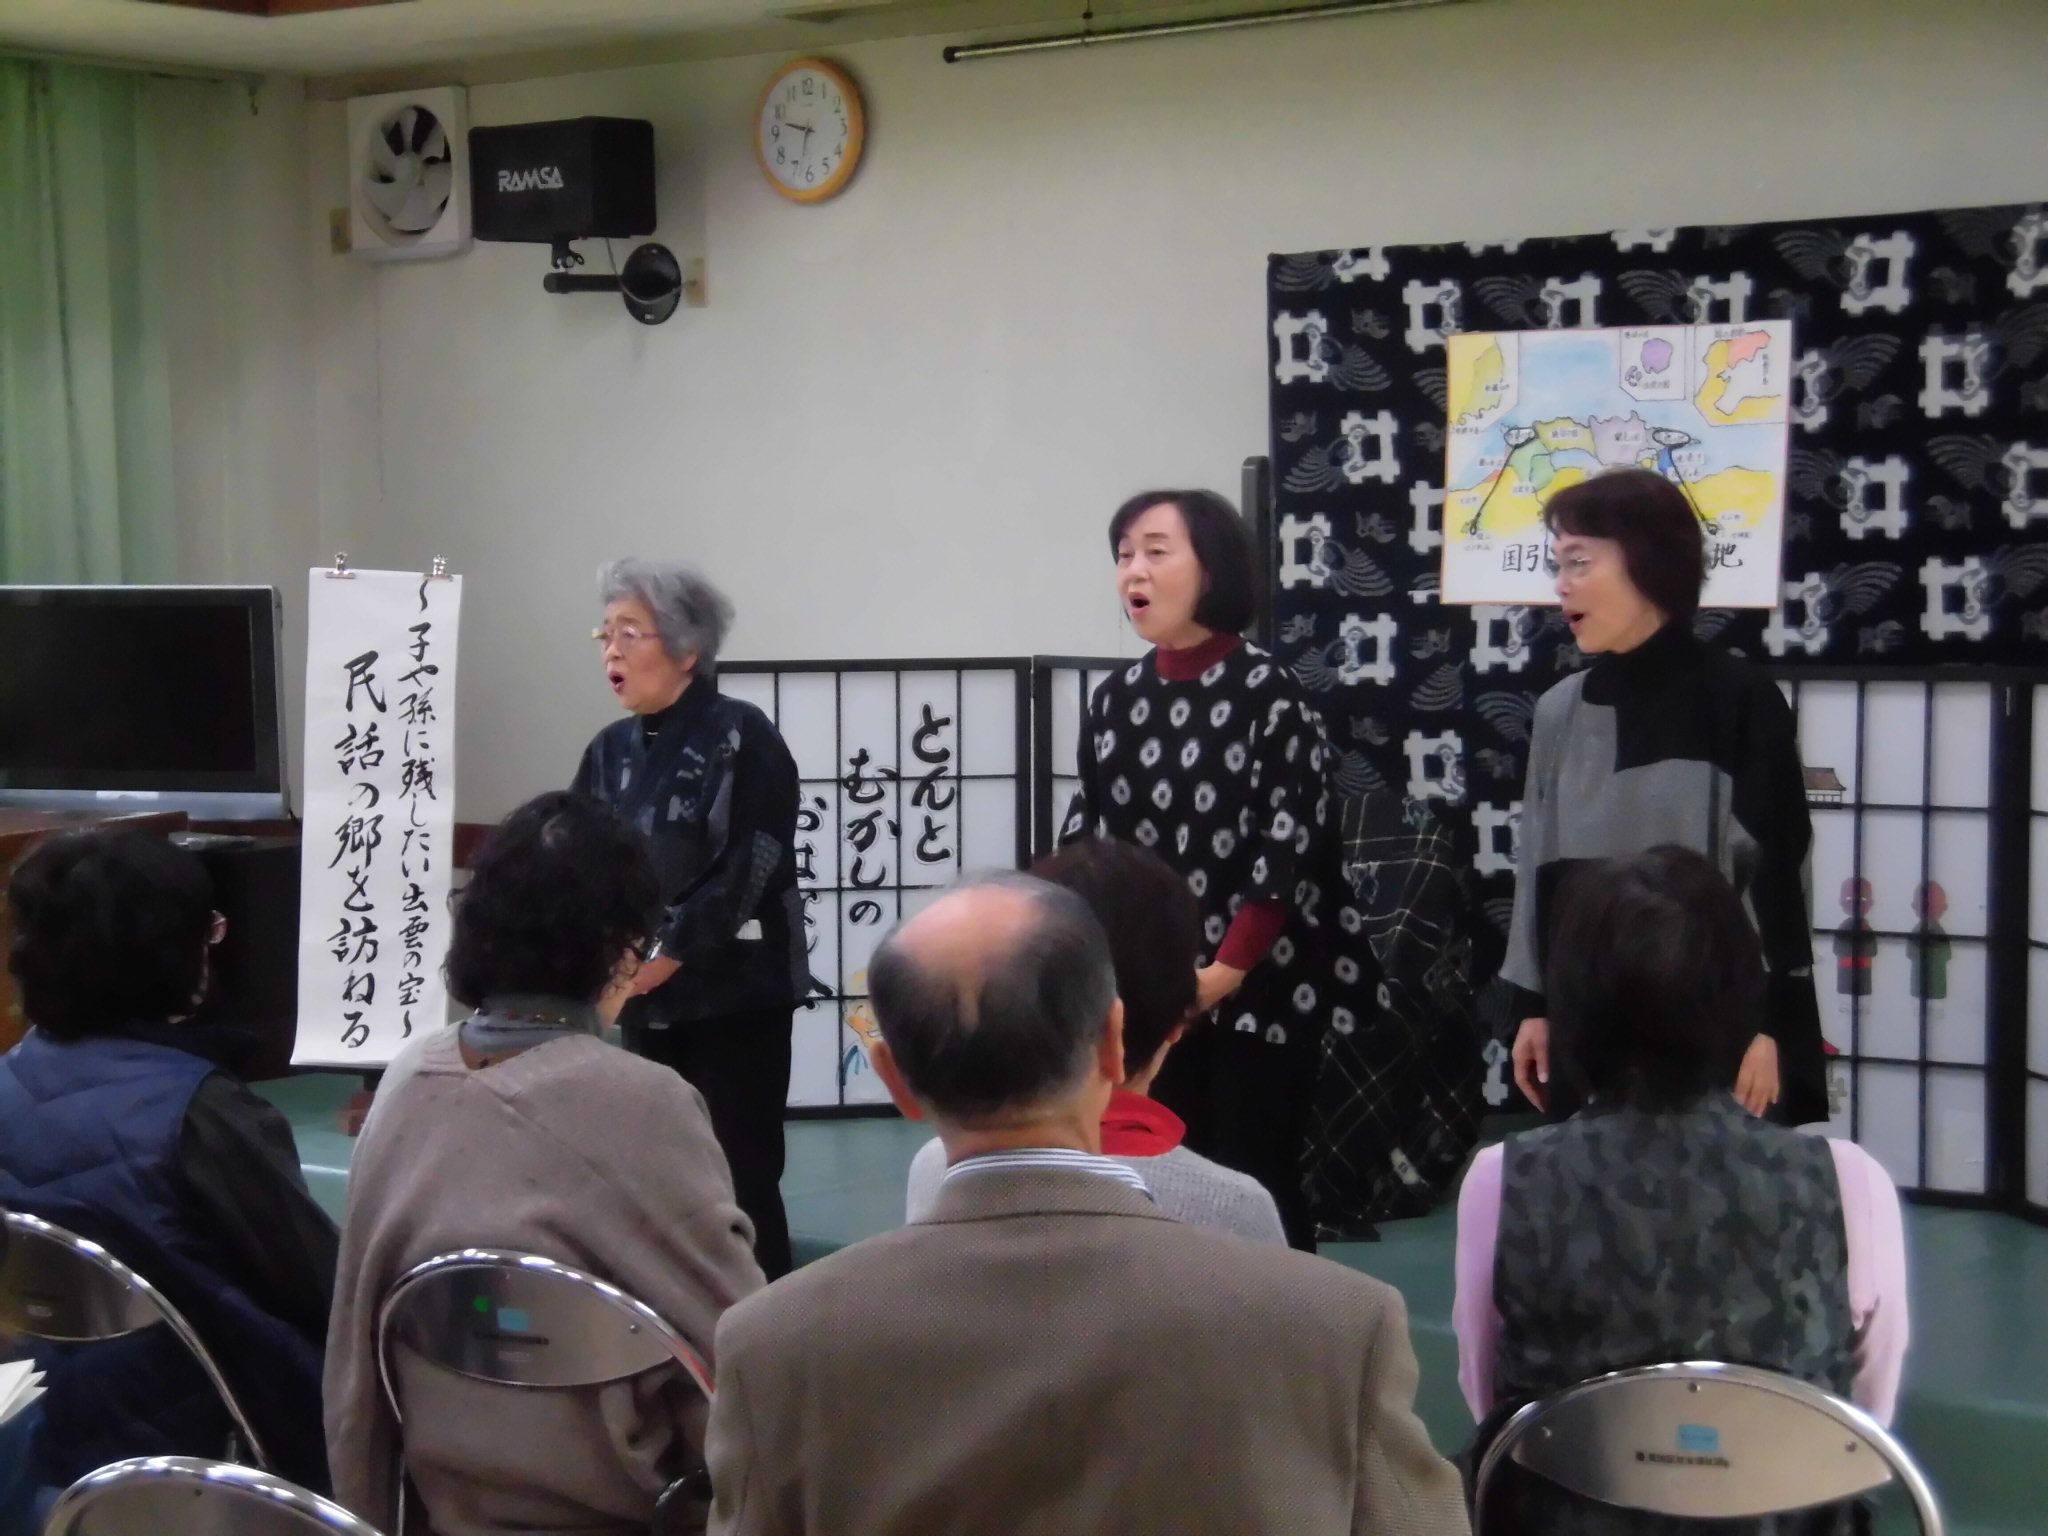 平田の民話を語る出雲みんわの会のメンバー3人の写真